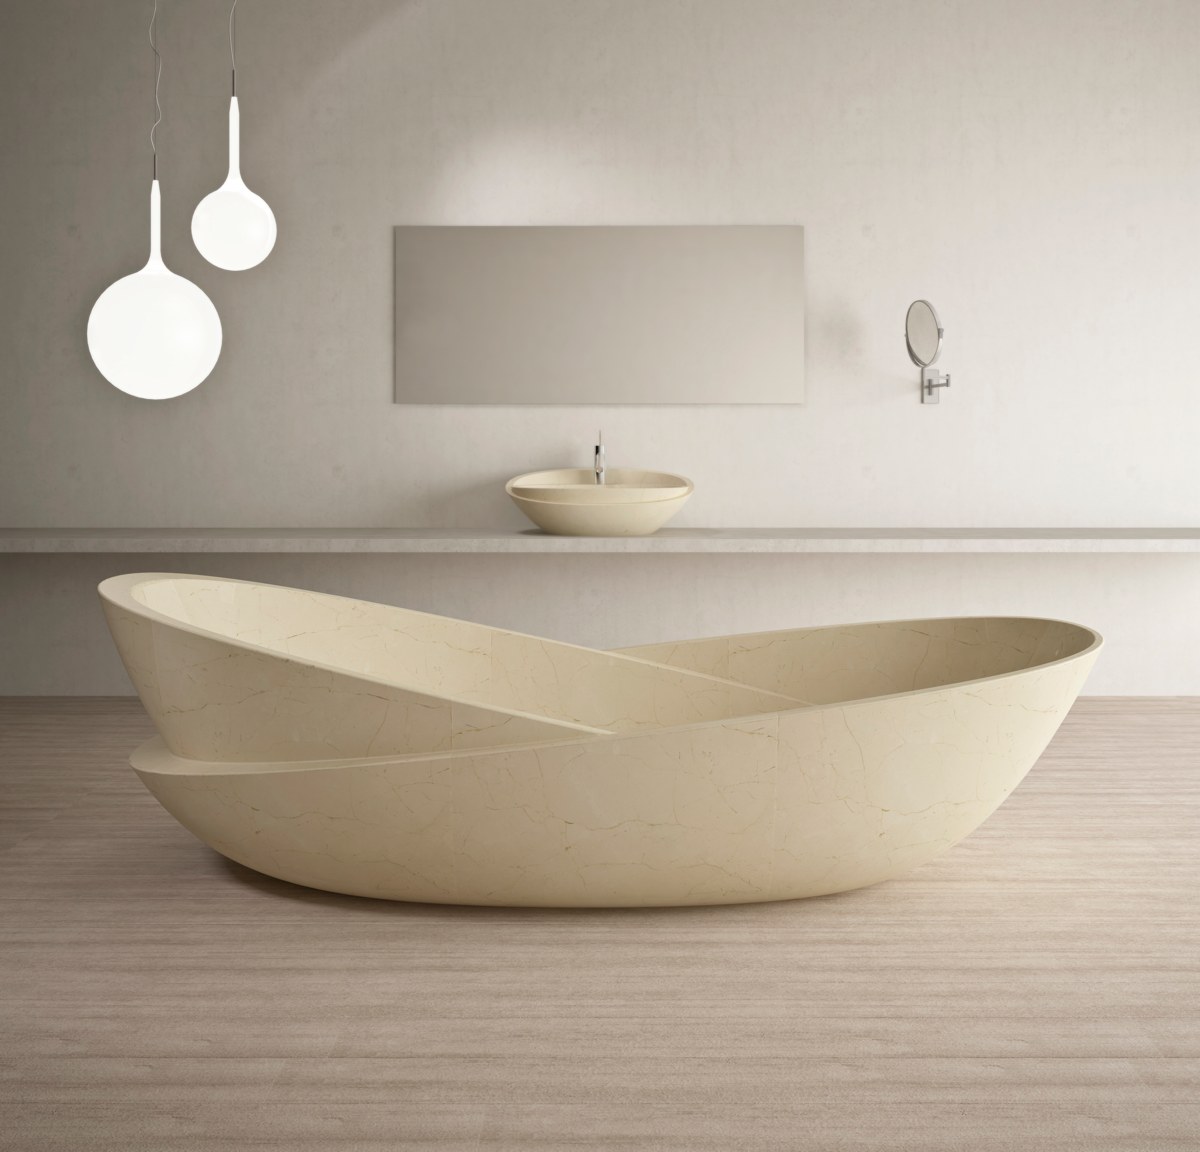 Thoạt nhìn, mẫu thiết kế bồn tắm này trông giống như hai chiếc bồn xiên lồng vào nhau. Thức tế nó là một mảnh đá cẩm thạch màu be được chạm khắc tinh xảo.